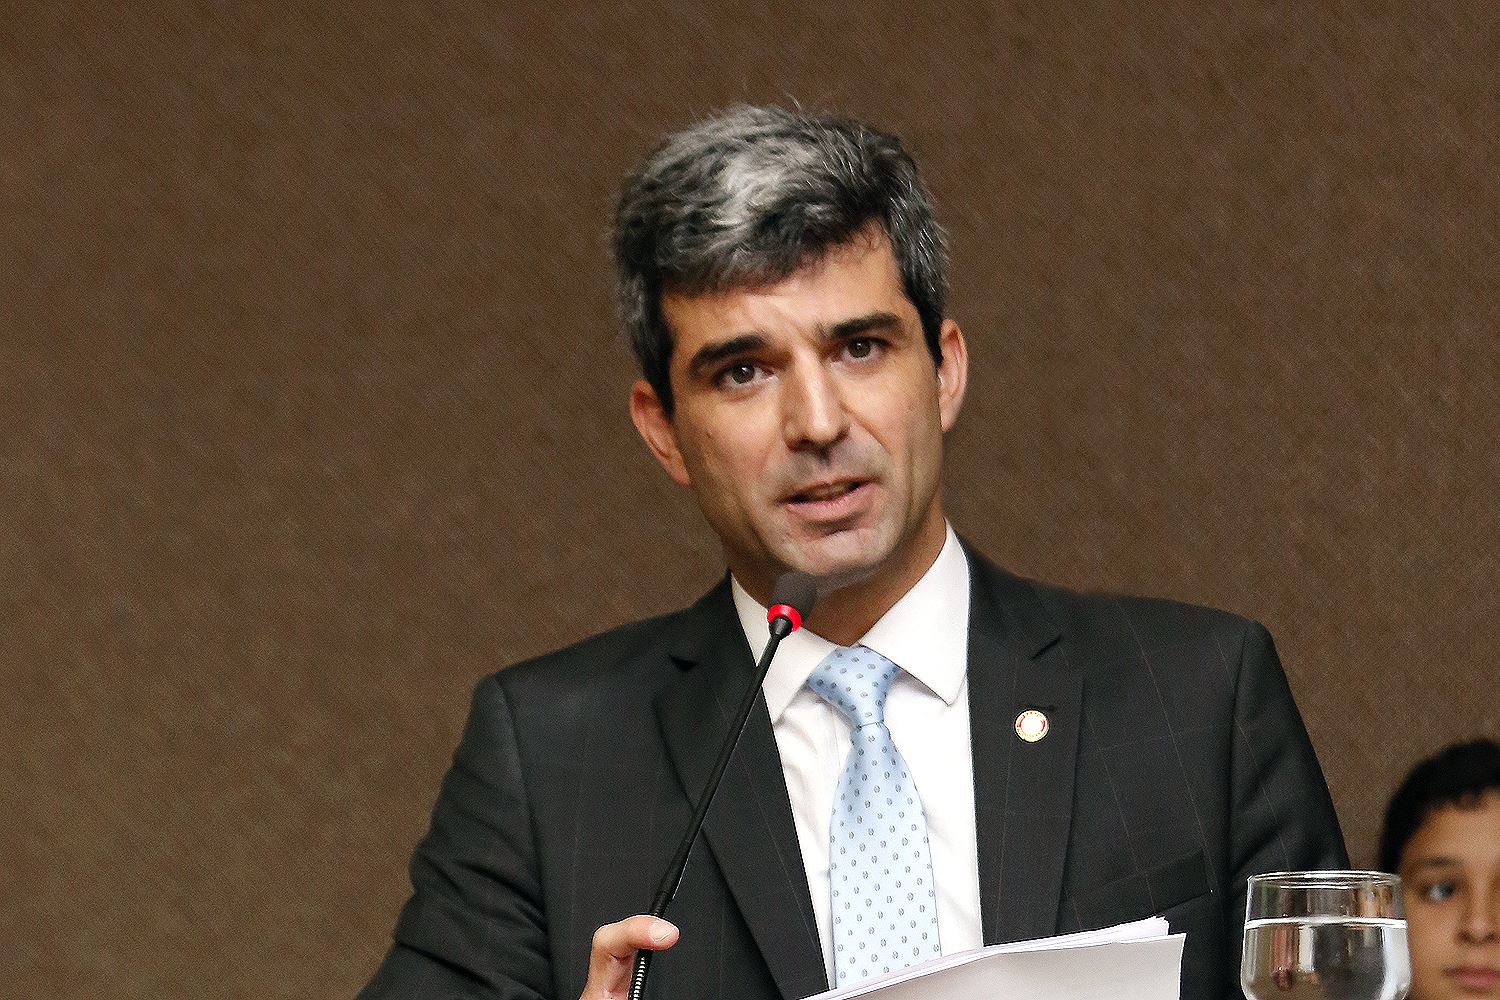 Juliano Costa Couto presidiu a Ordem dos Advogados do Brasil Seccional do Distrito Federal entre 2016 e 2018 | Foto: Divulgação/ OAB/DF